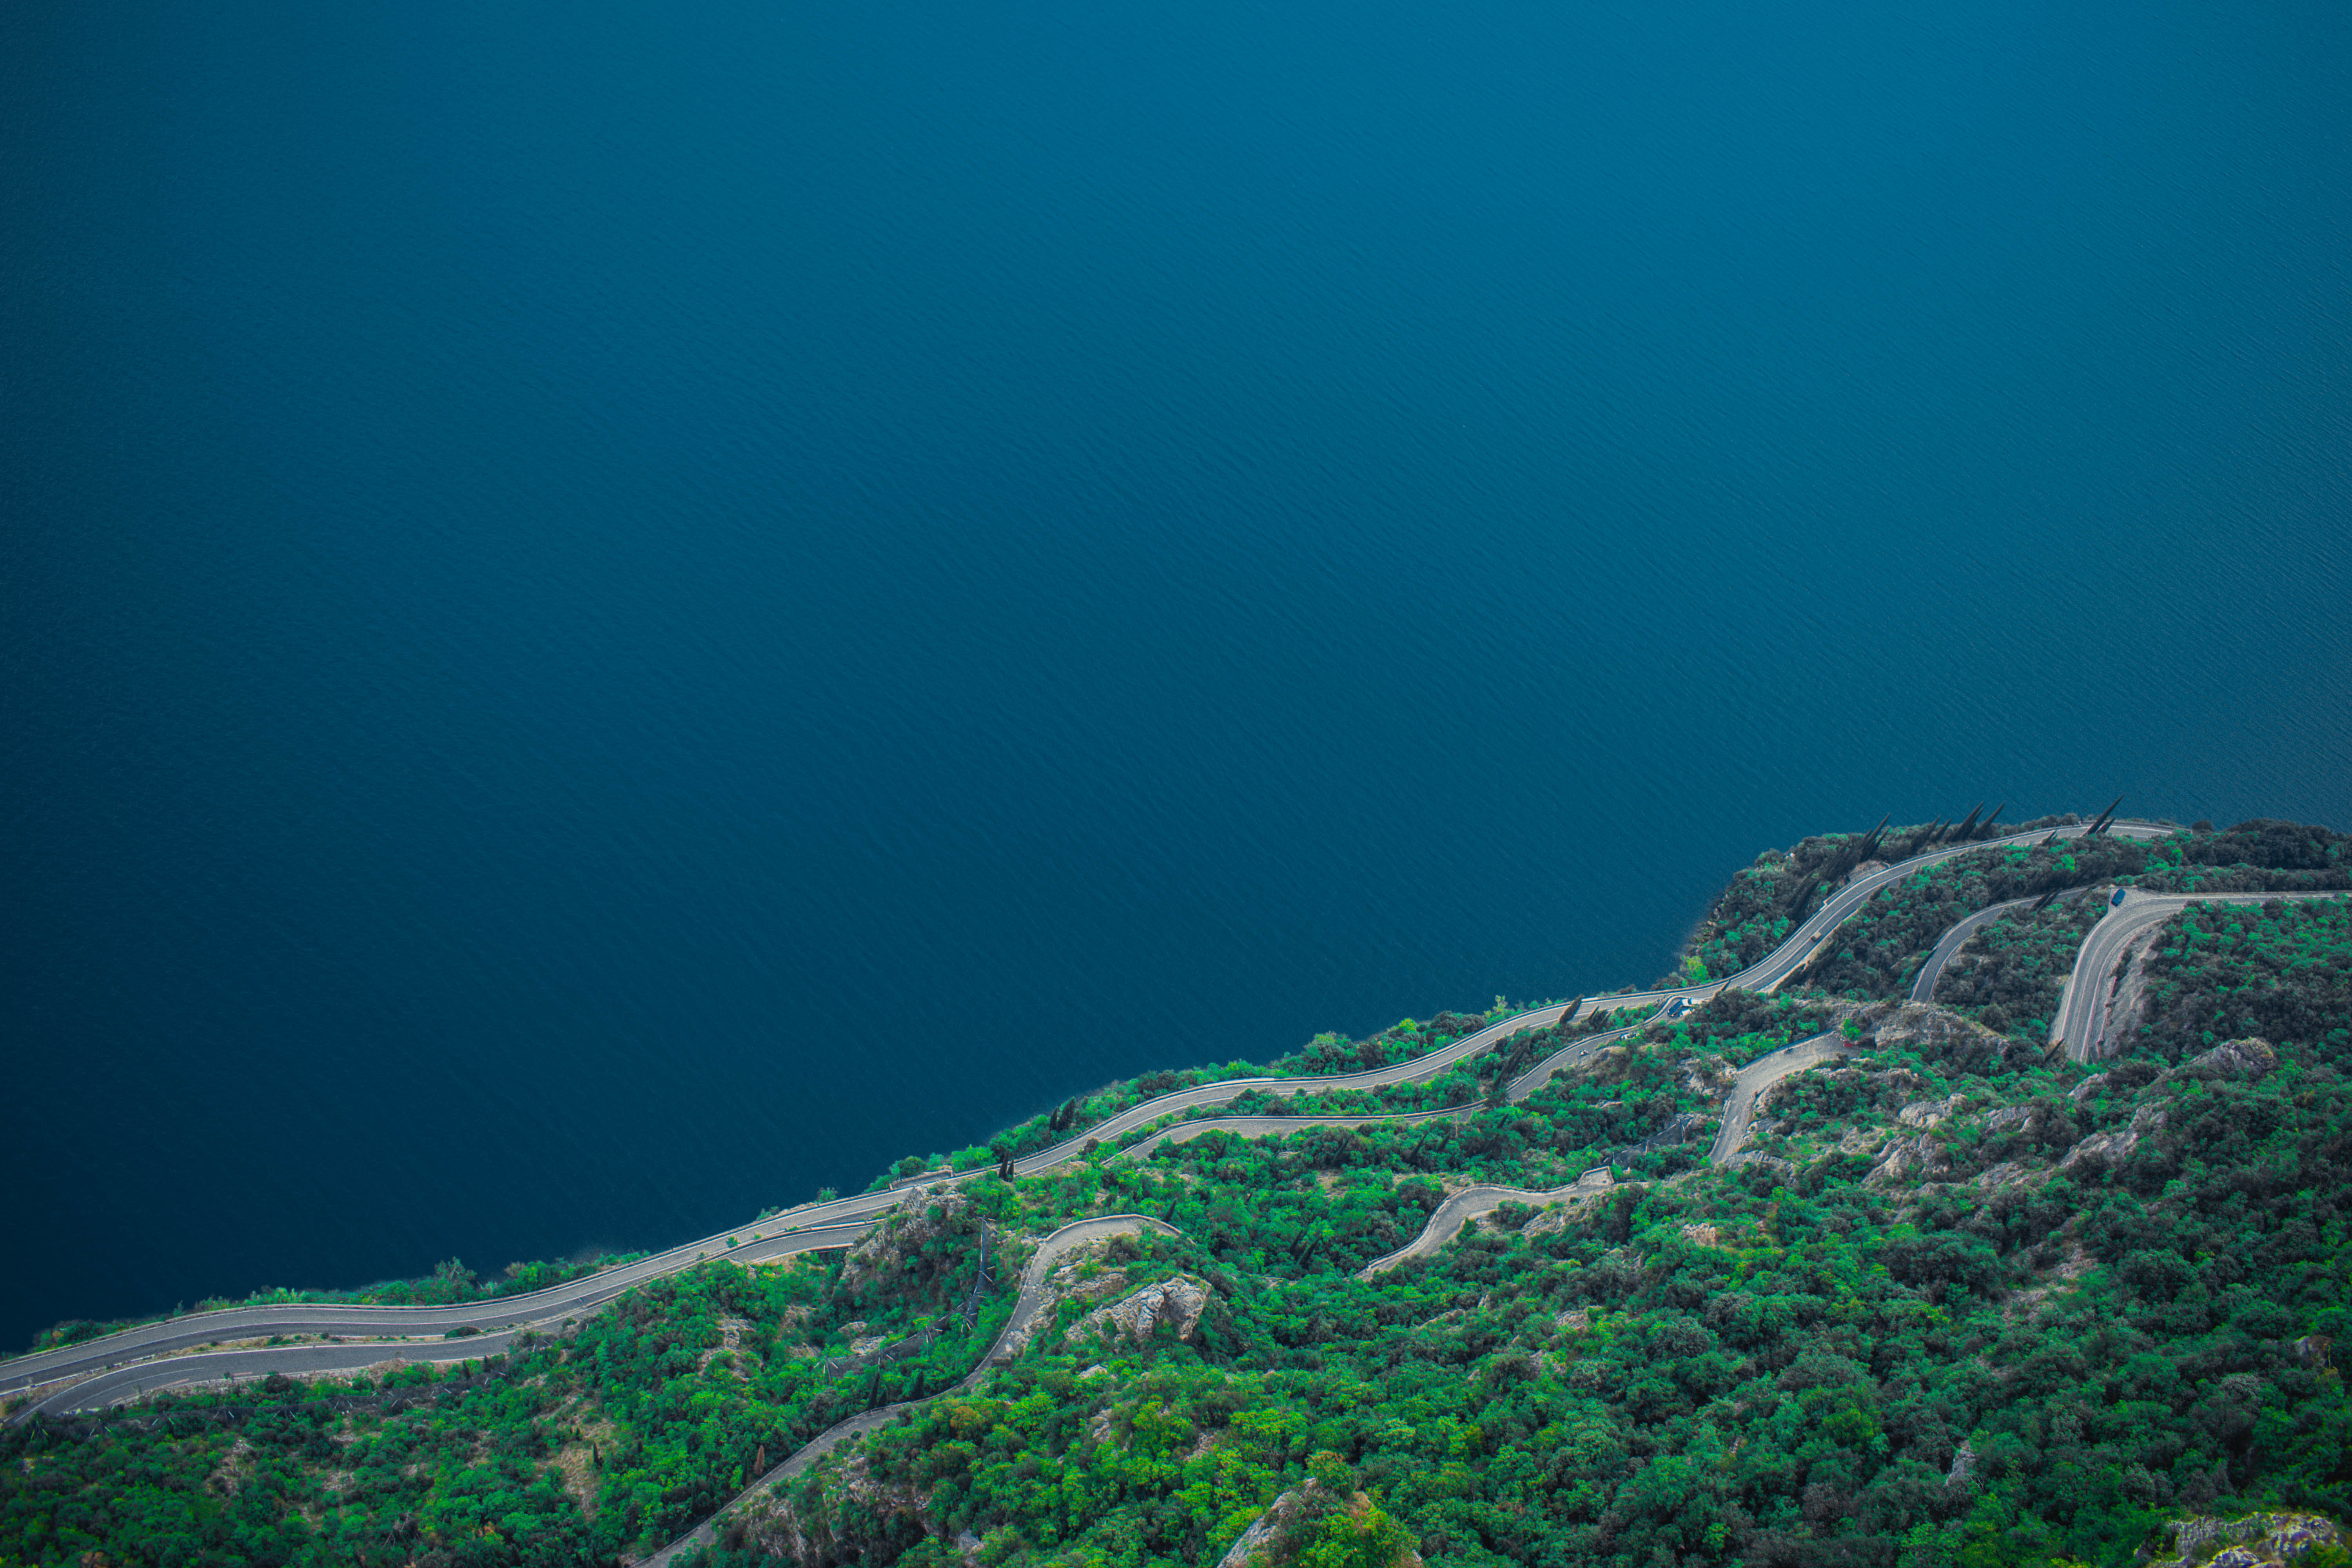 Nivelul de apă foarte scăzut al lacului Garda, Italia, șochează turiștii. „Apa nu mai era acolo” | GALERIE FOTO - Imaginea 10